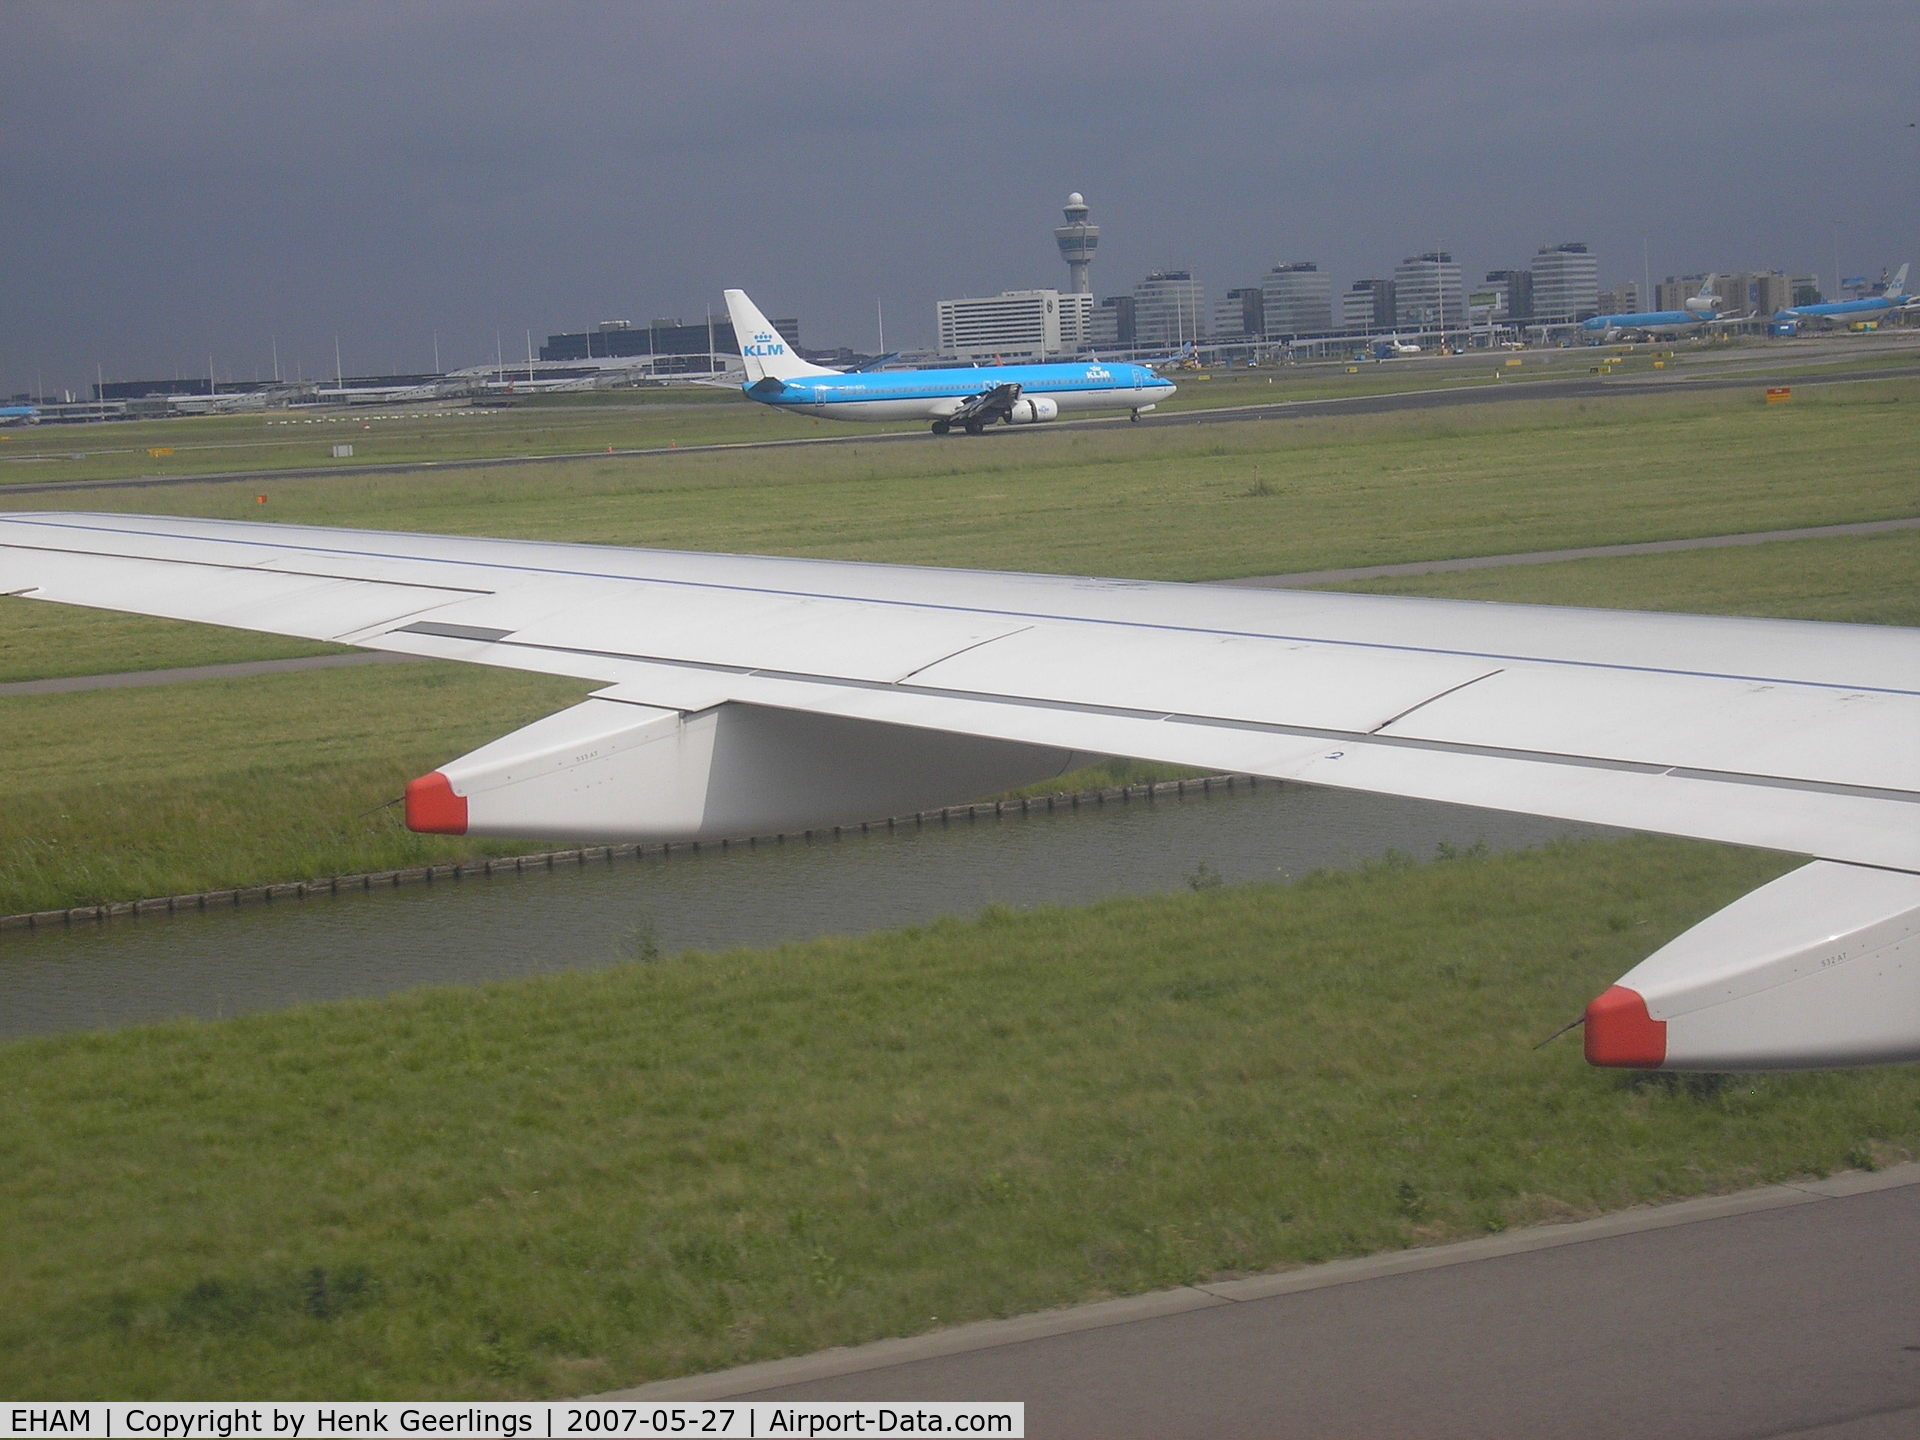 Amsterdam Schiphol Airport, Haarlemmermeer, near Amsterdam Netherlands (EHAM) - Schiphol Airport , arrival